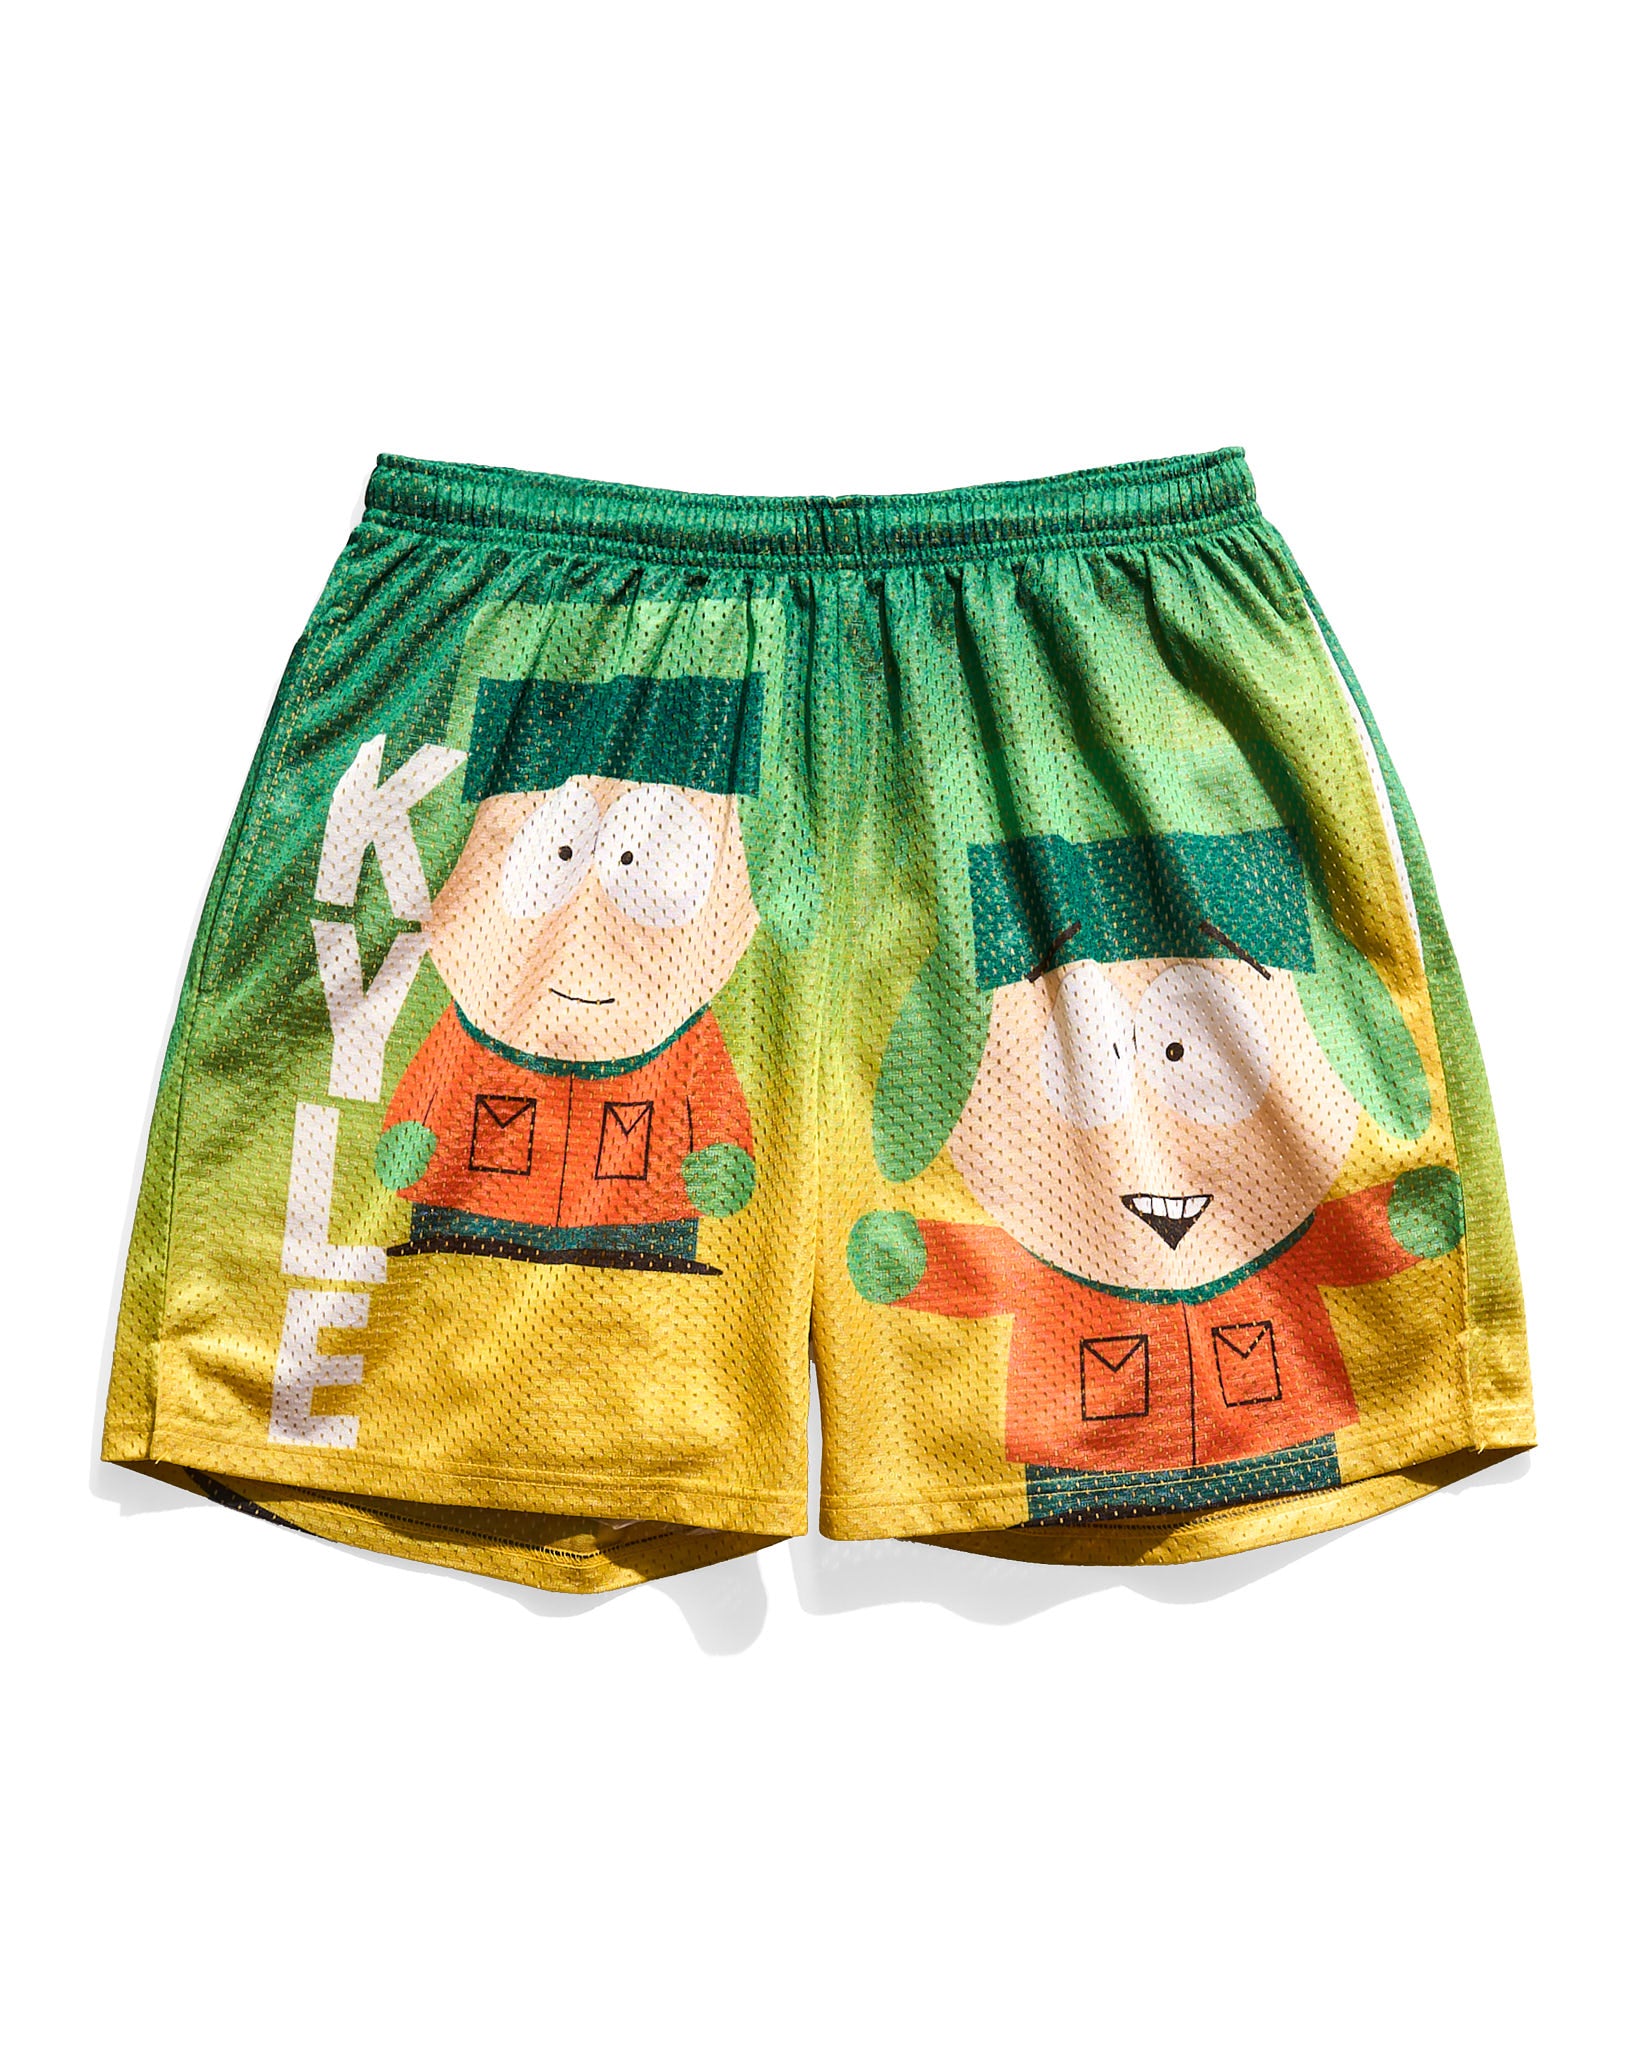 South Park Kyle Broflovski Retro Shorts